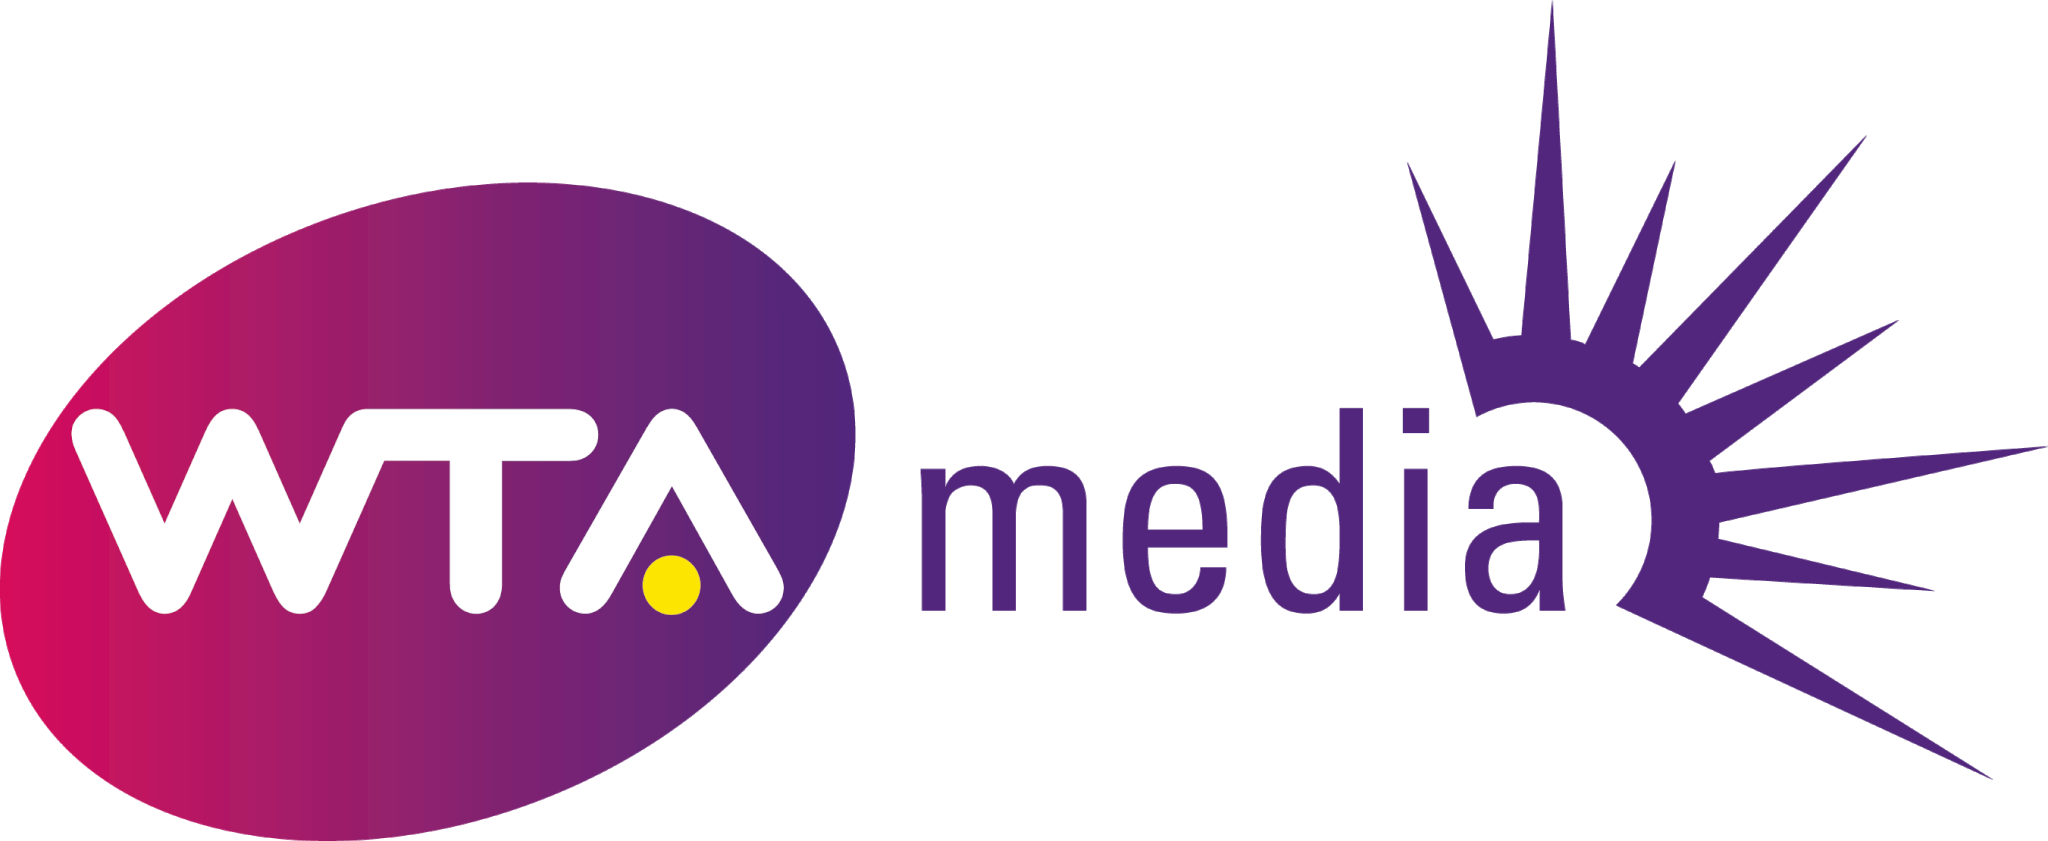 Media House Logo - WTA Media